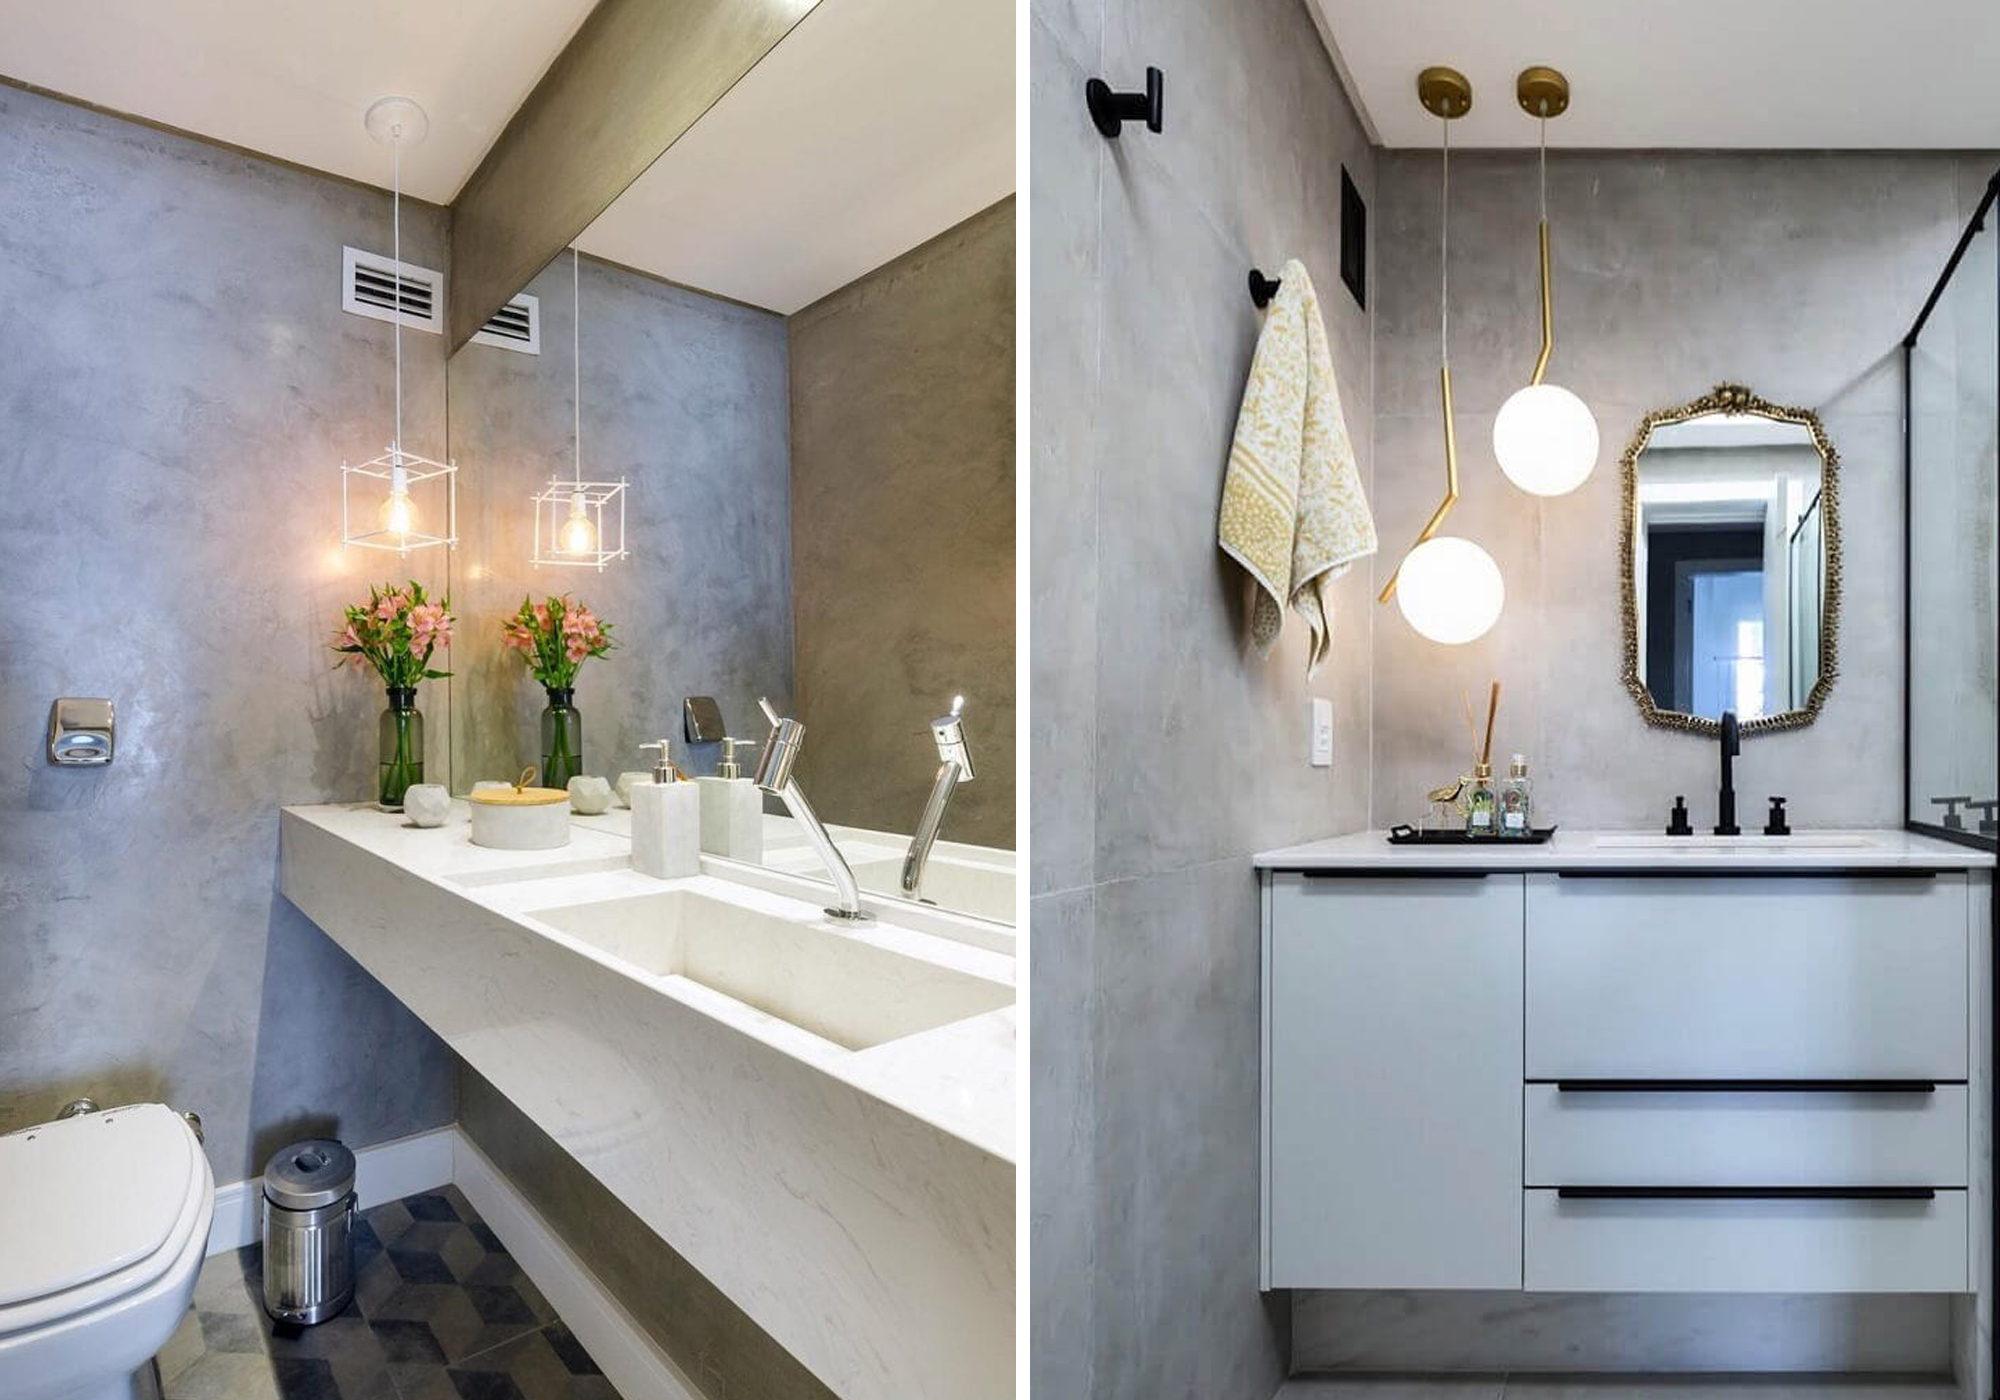 Ideias de iluminação para banheiro: dicas produtivas para decorar